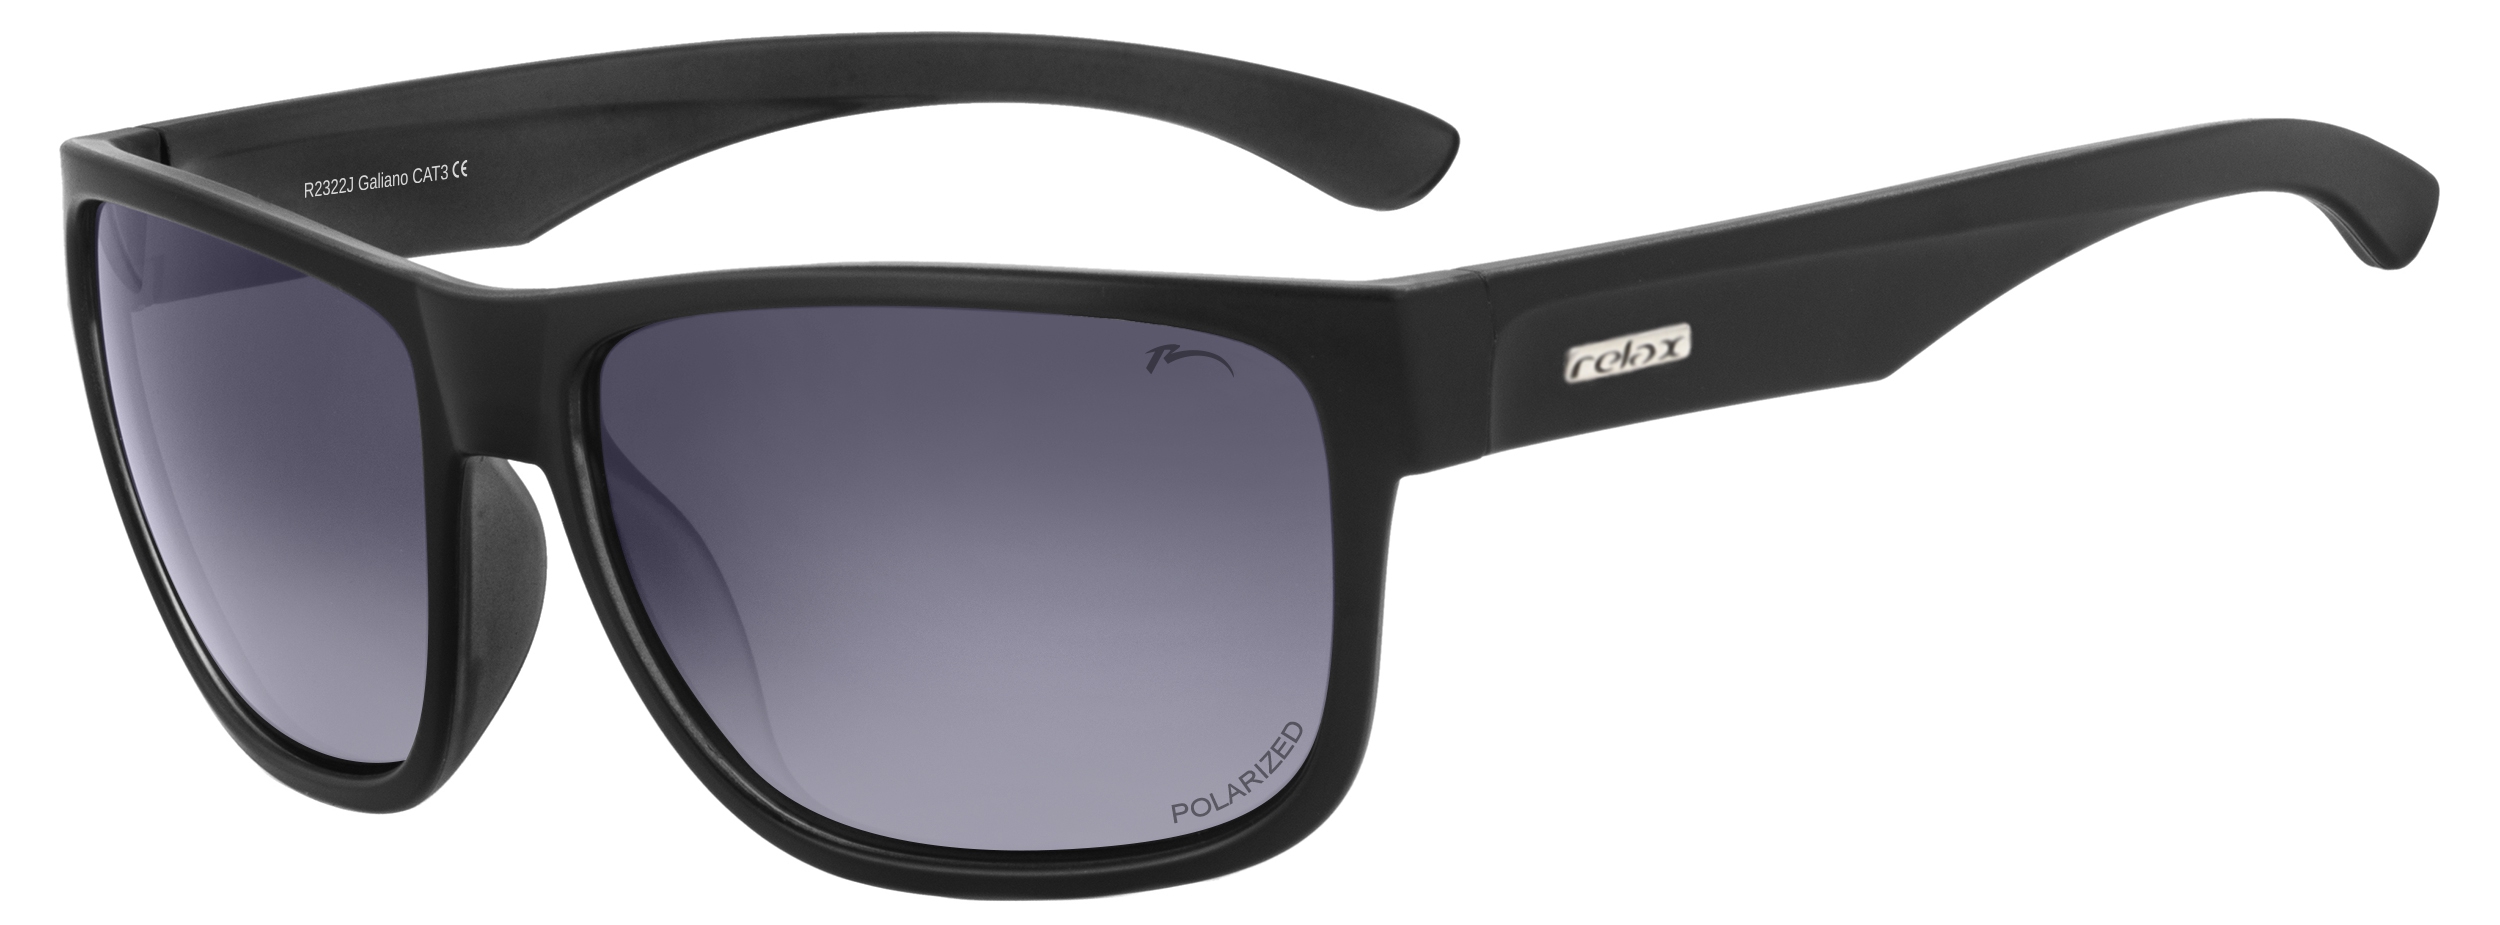 Polarizační sluneční brýle Relax Galiano R2322J - standard